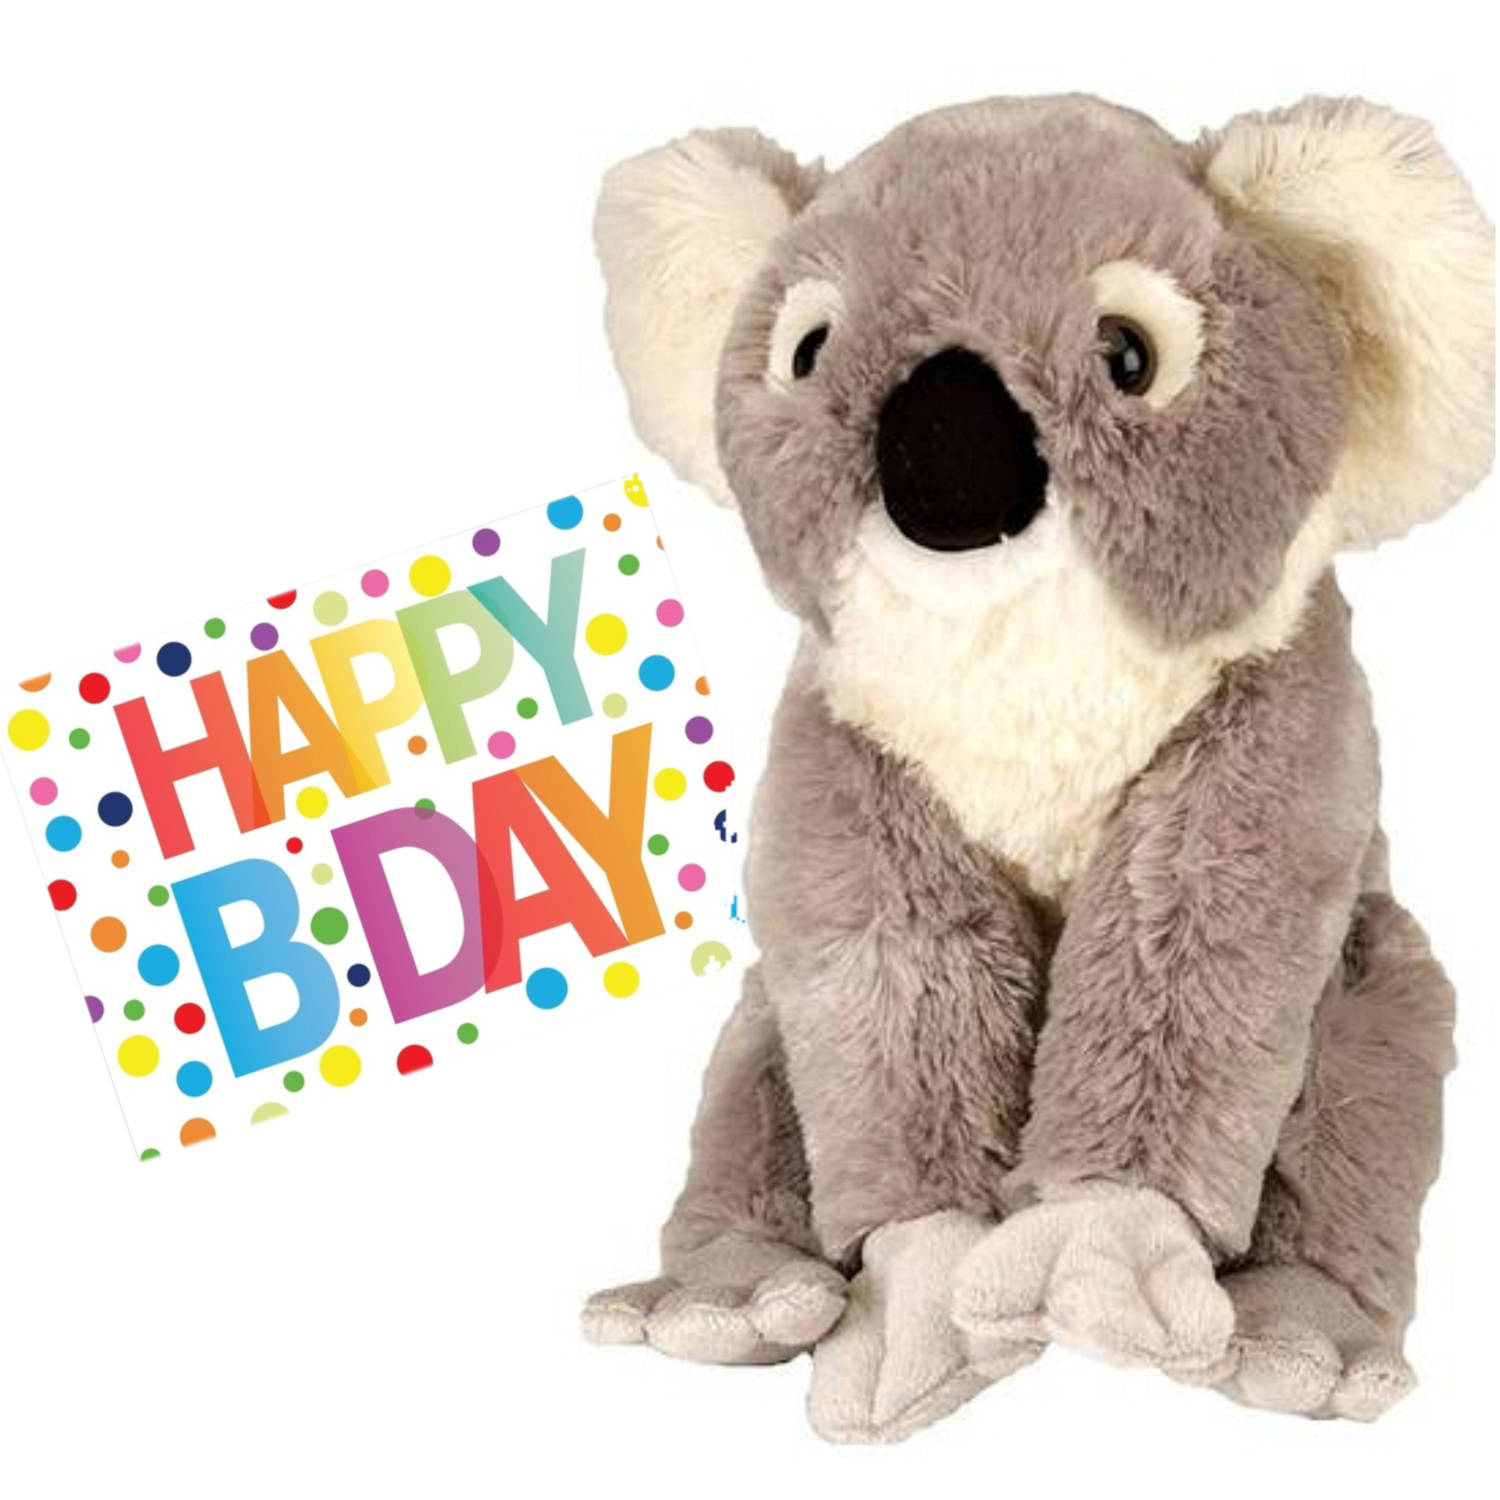 Pluche knuffel koala beer 30 cm met A5-size Happy Birthday wenskaart Knuffeldier